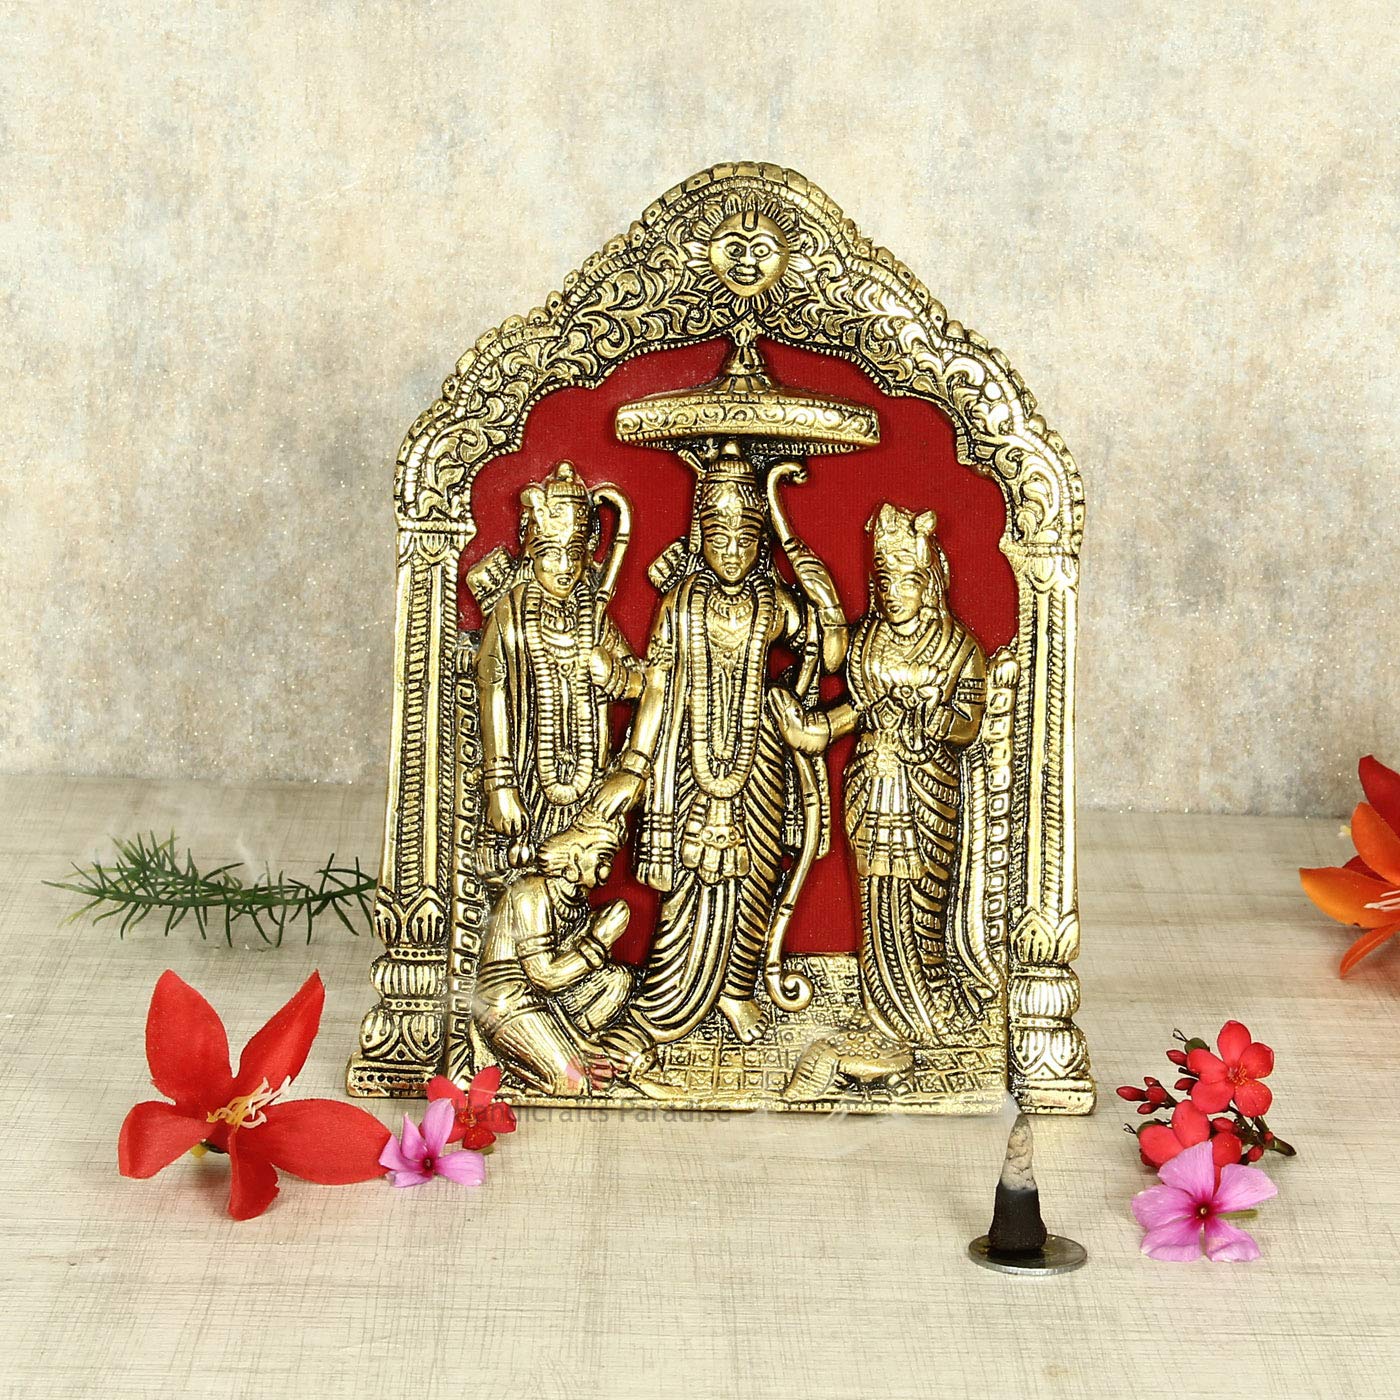 Religious Metal Sita Ram Laxman Hanuman With Stand & Hanging Tamrapatra